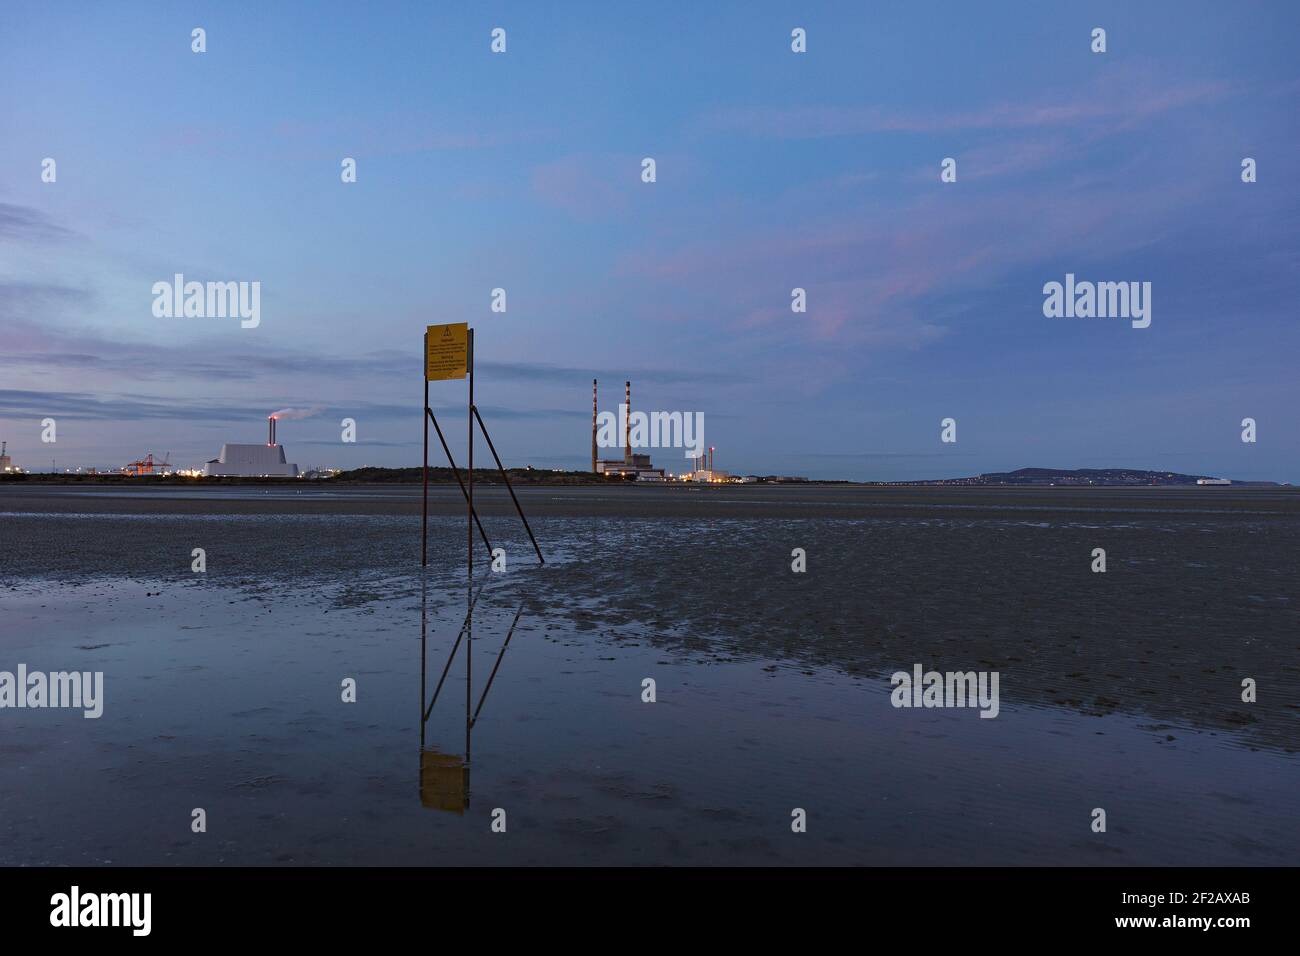 Sandymount, plage de Dublin au crépuscule, panneau d'avertissement sur la marée venant rapidement, cheminées Poolbeg et incinérateur en arrière-plan Banque D'Images